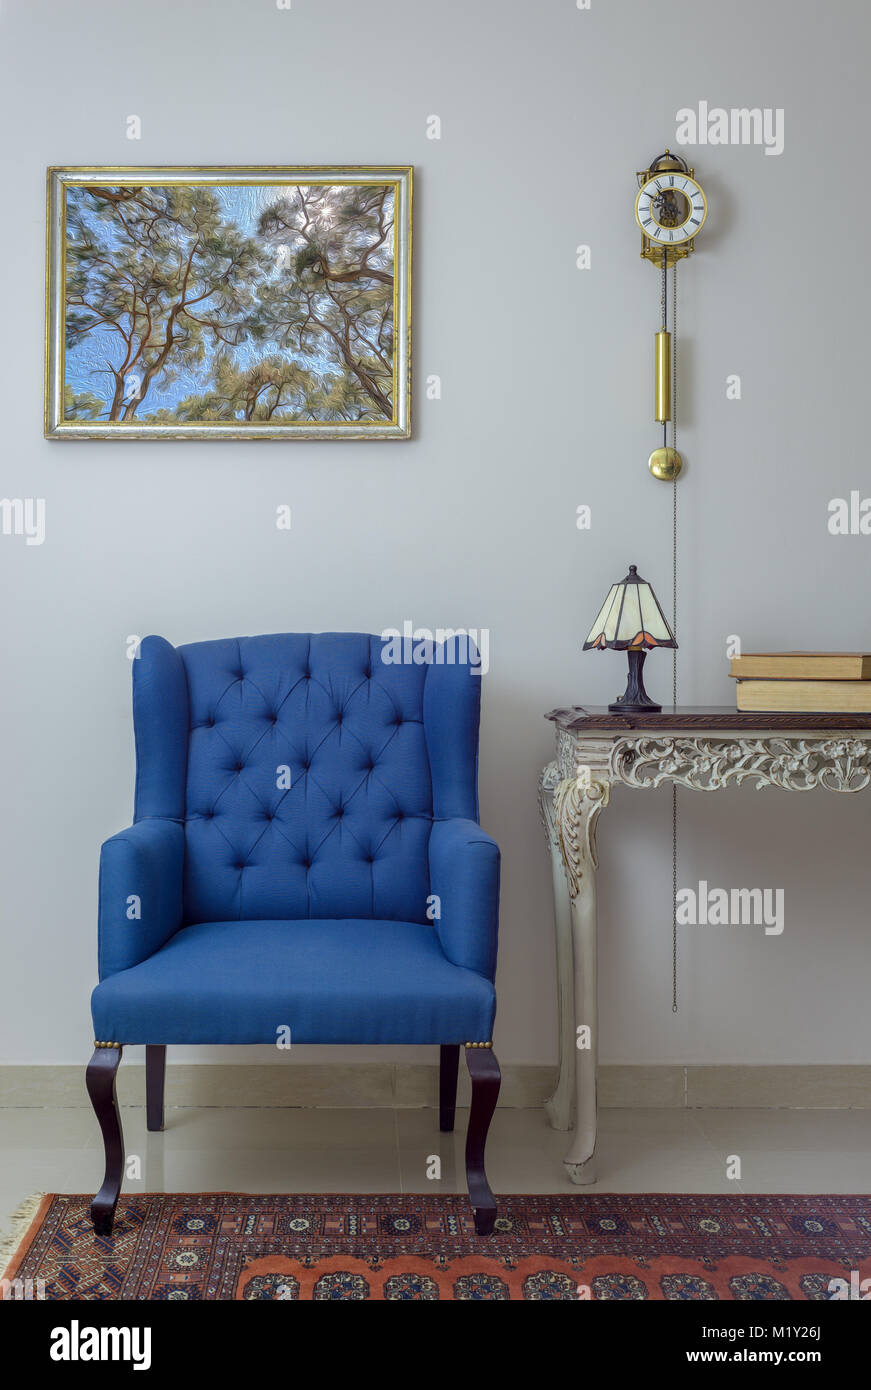 Muebles Vintage - Interior composición del sillón azul retro, vintage beige  madera mesa, lámpara de mesa, libros y reloj de péndulo sobre pared blanca  off Fotografía de stock - Alamy